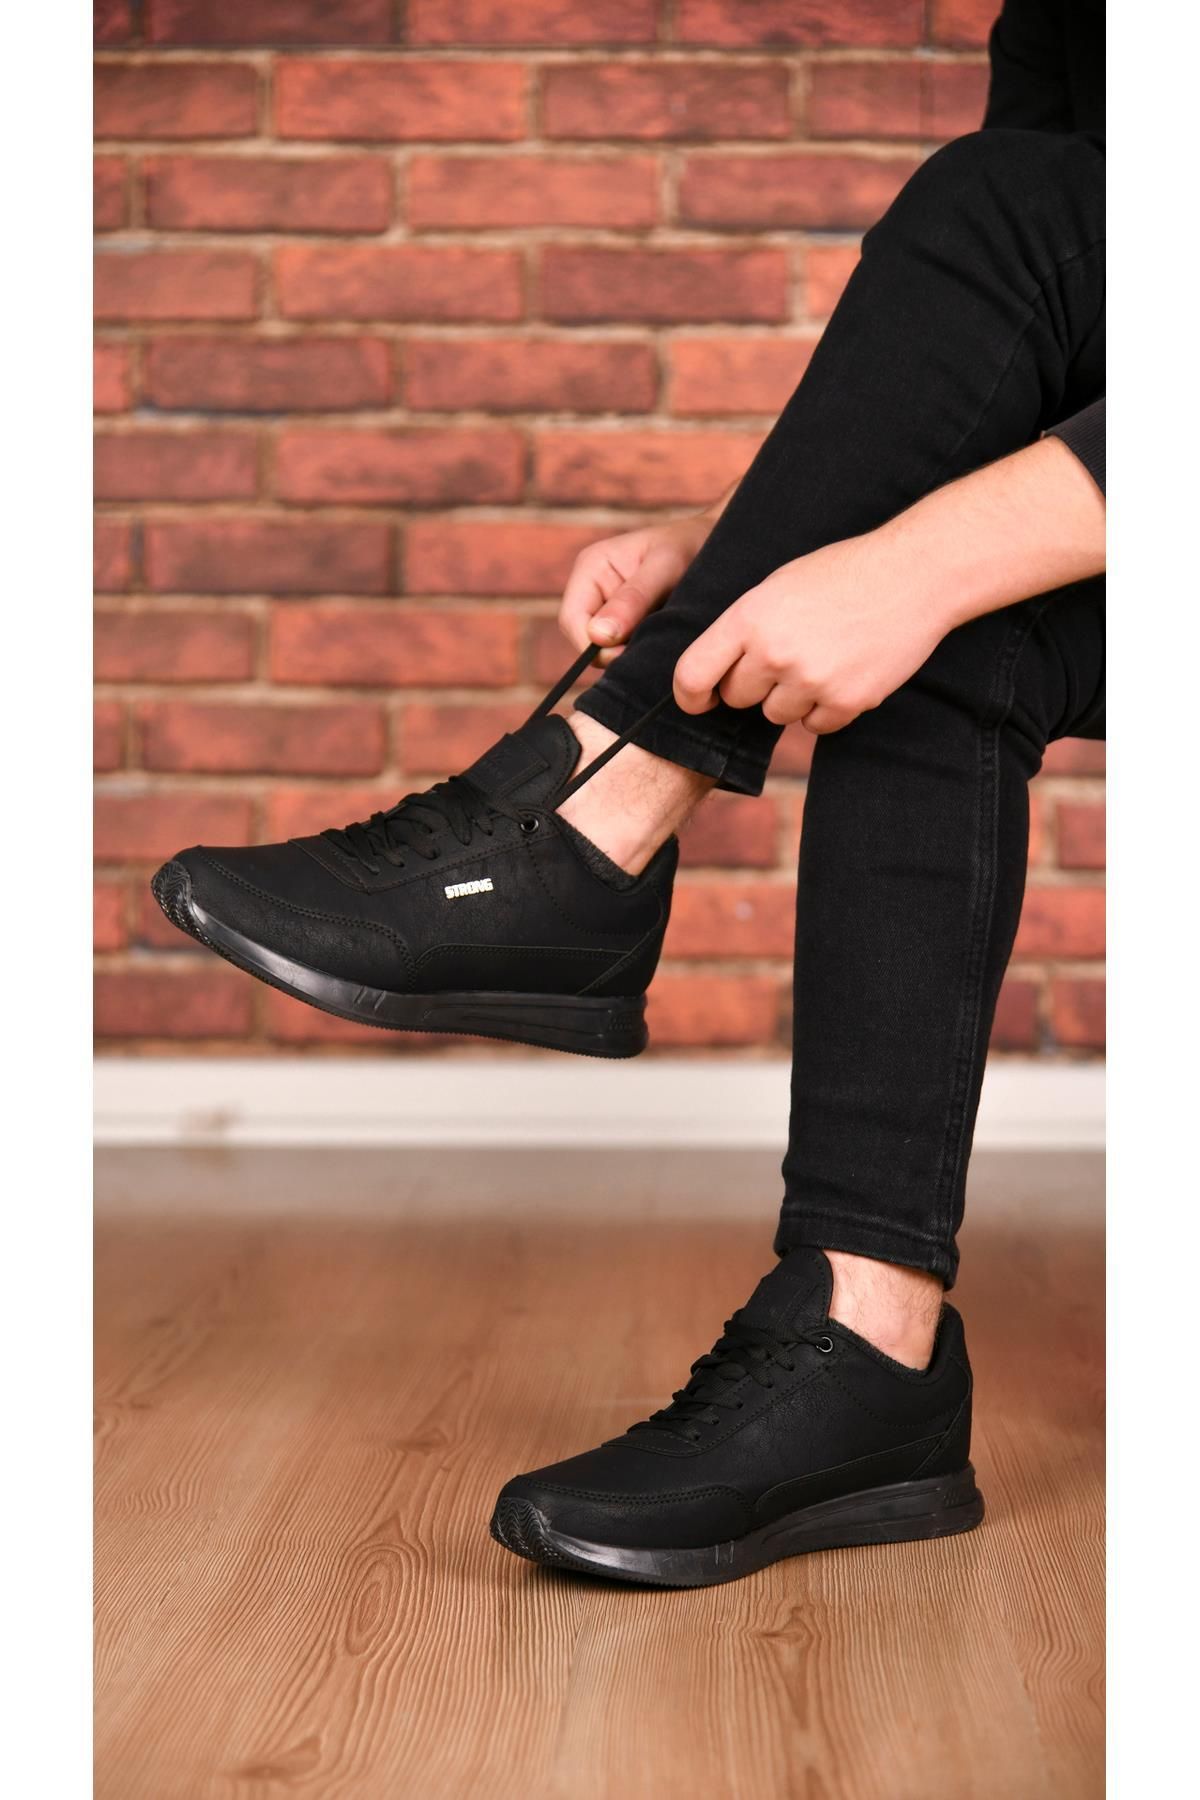 mackrock sports Şık Tasarım Bağcıklı Hafif Günlük Yürüyüş Rahat Taban Casual Sneaker Spor Ayakkabı